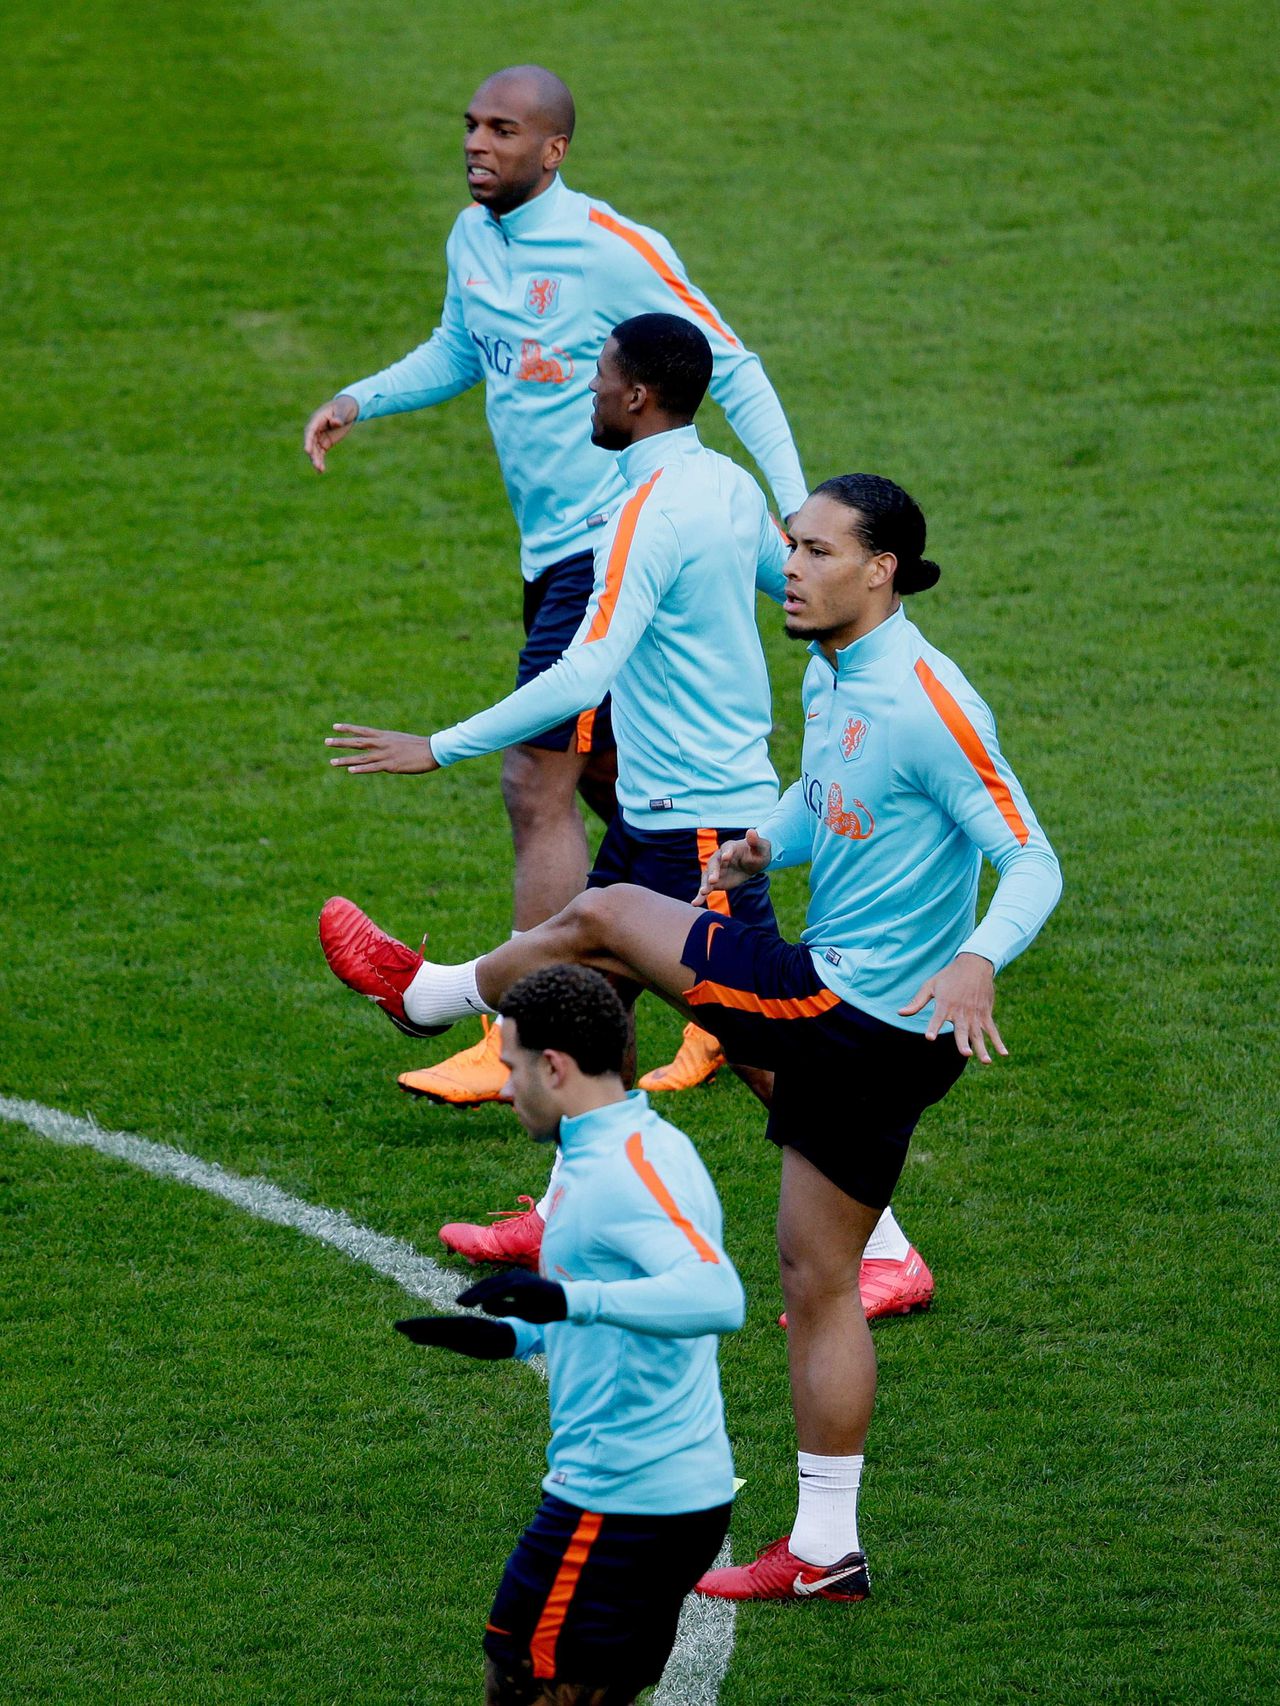 Het Nederlands elftal trainde zondag in Genève in aanloop naar het oefenduel van maandag tegen Portugal. Van boven naar beneden: Ryan Babel, Georginio Wijnaldum, Virgil van Dijk en Memphis Depay